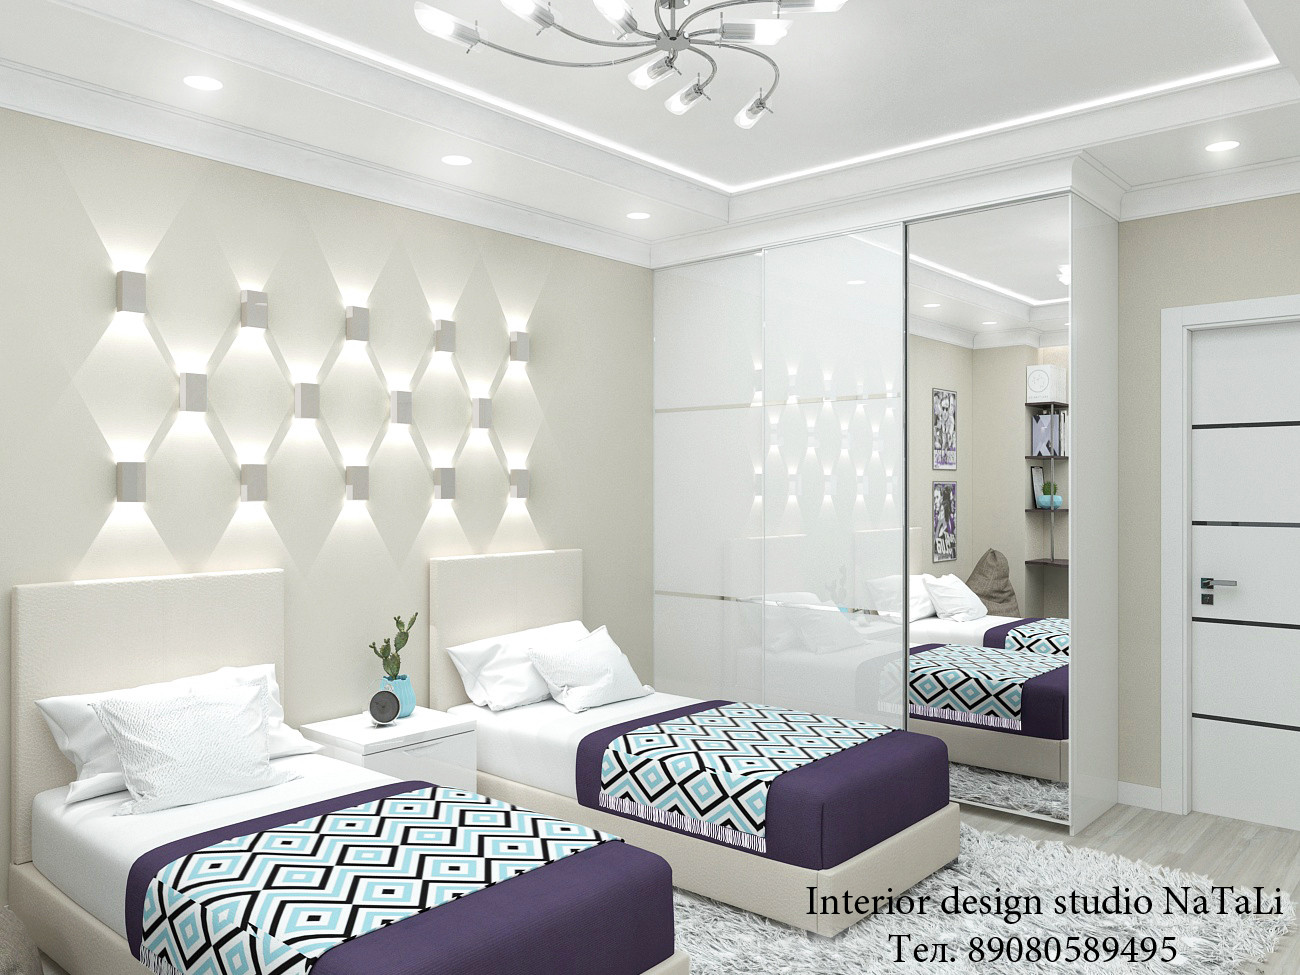 Дизайн интерьера комнаты для мальчика-подростка: варианты оформления и выбор стиля